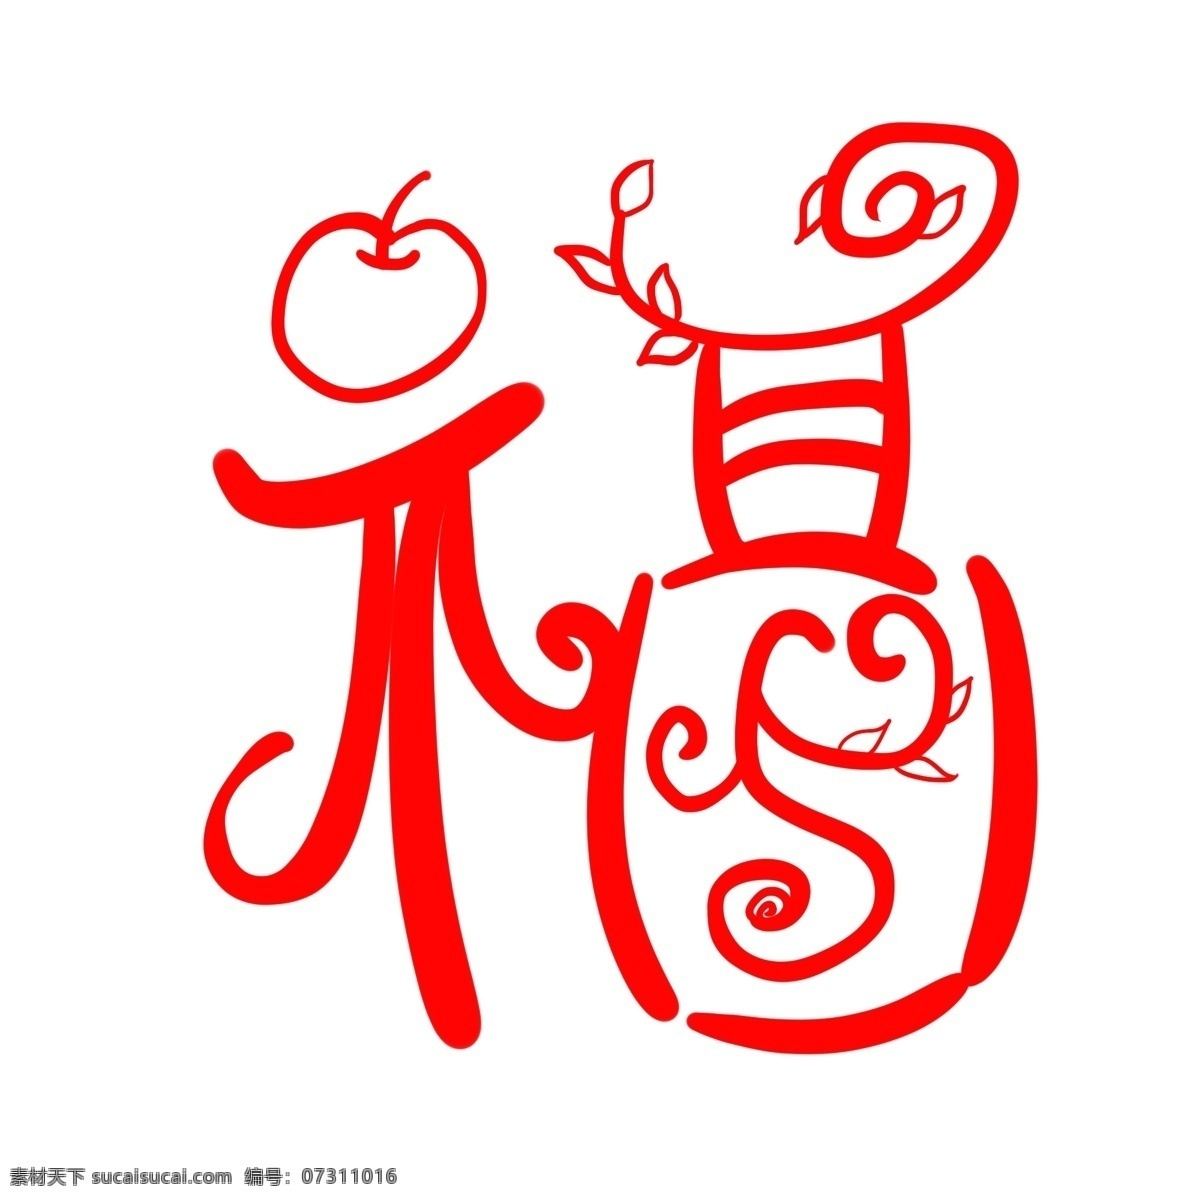 卡通 手绘 红色 苹果 福字 文化 暖色 中国风 贴画 可爱 形象 造型 寓意